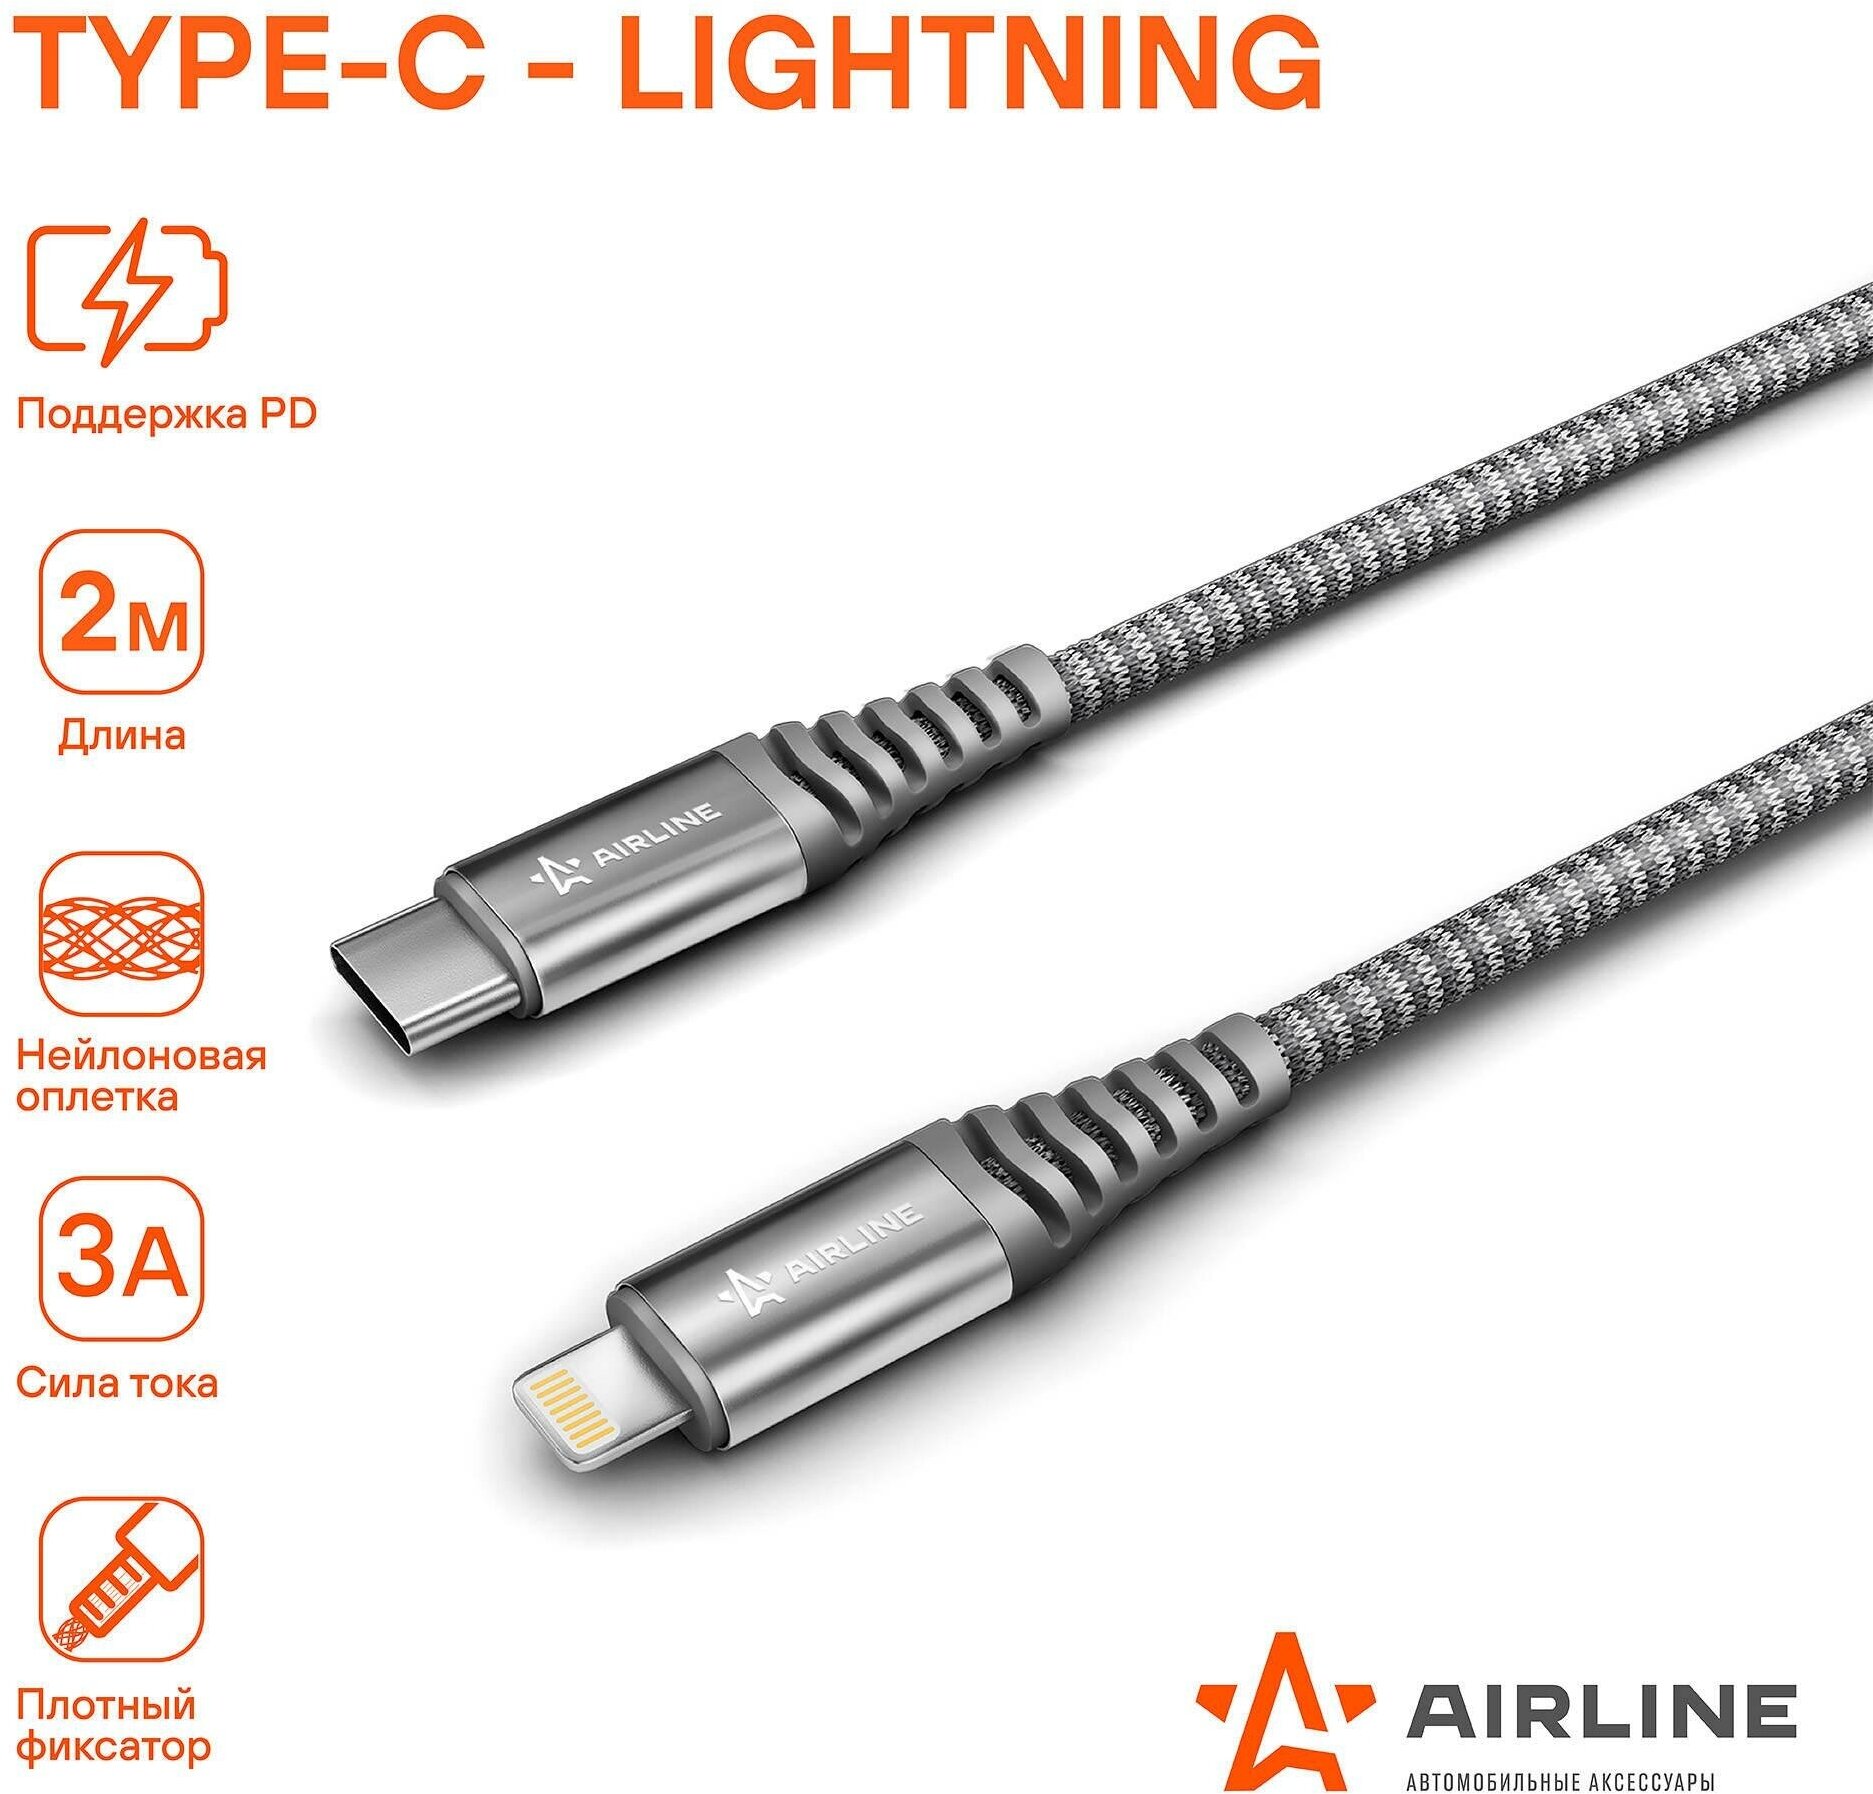 Airline кабель type-c - lightning (iphone/ipad) поддержка pd 2м, серый нейлоновый (ach-c-40) achc40